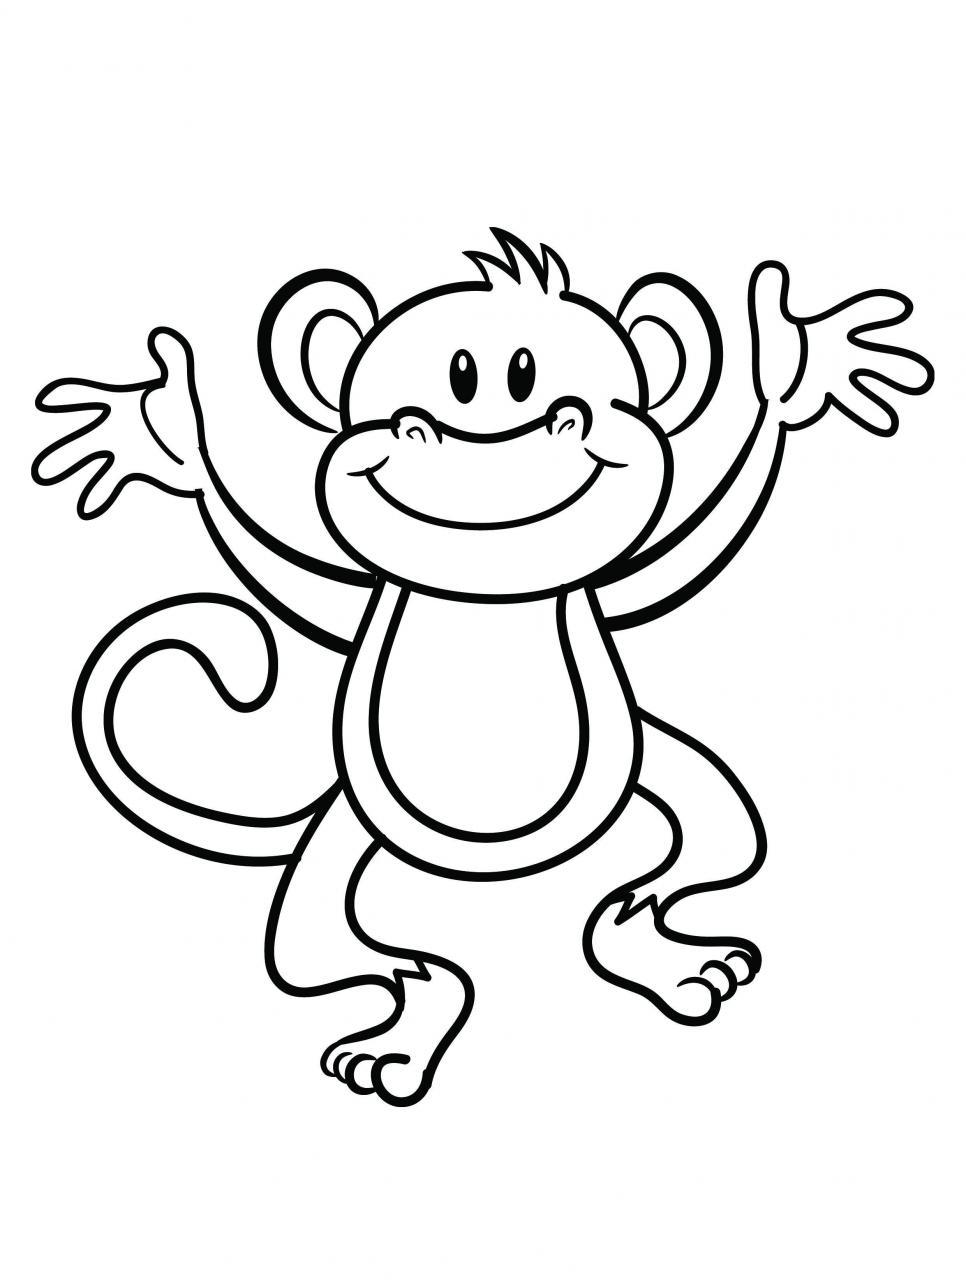 Top 85 về con khỉ hình vẽ  coedocomvn